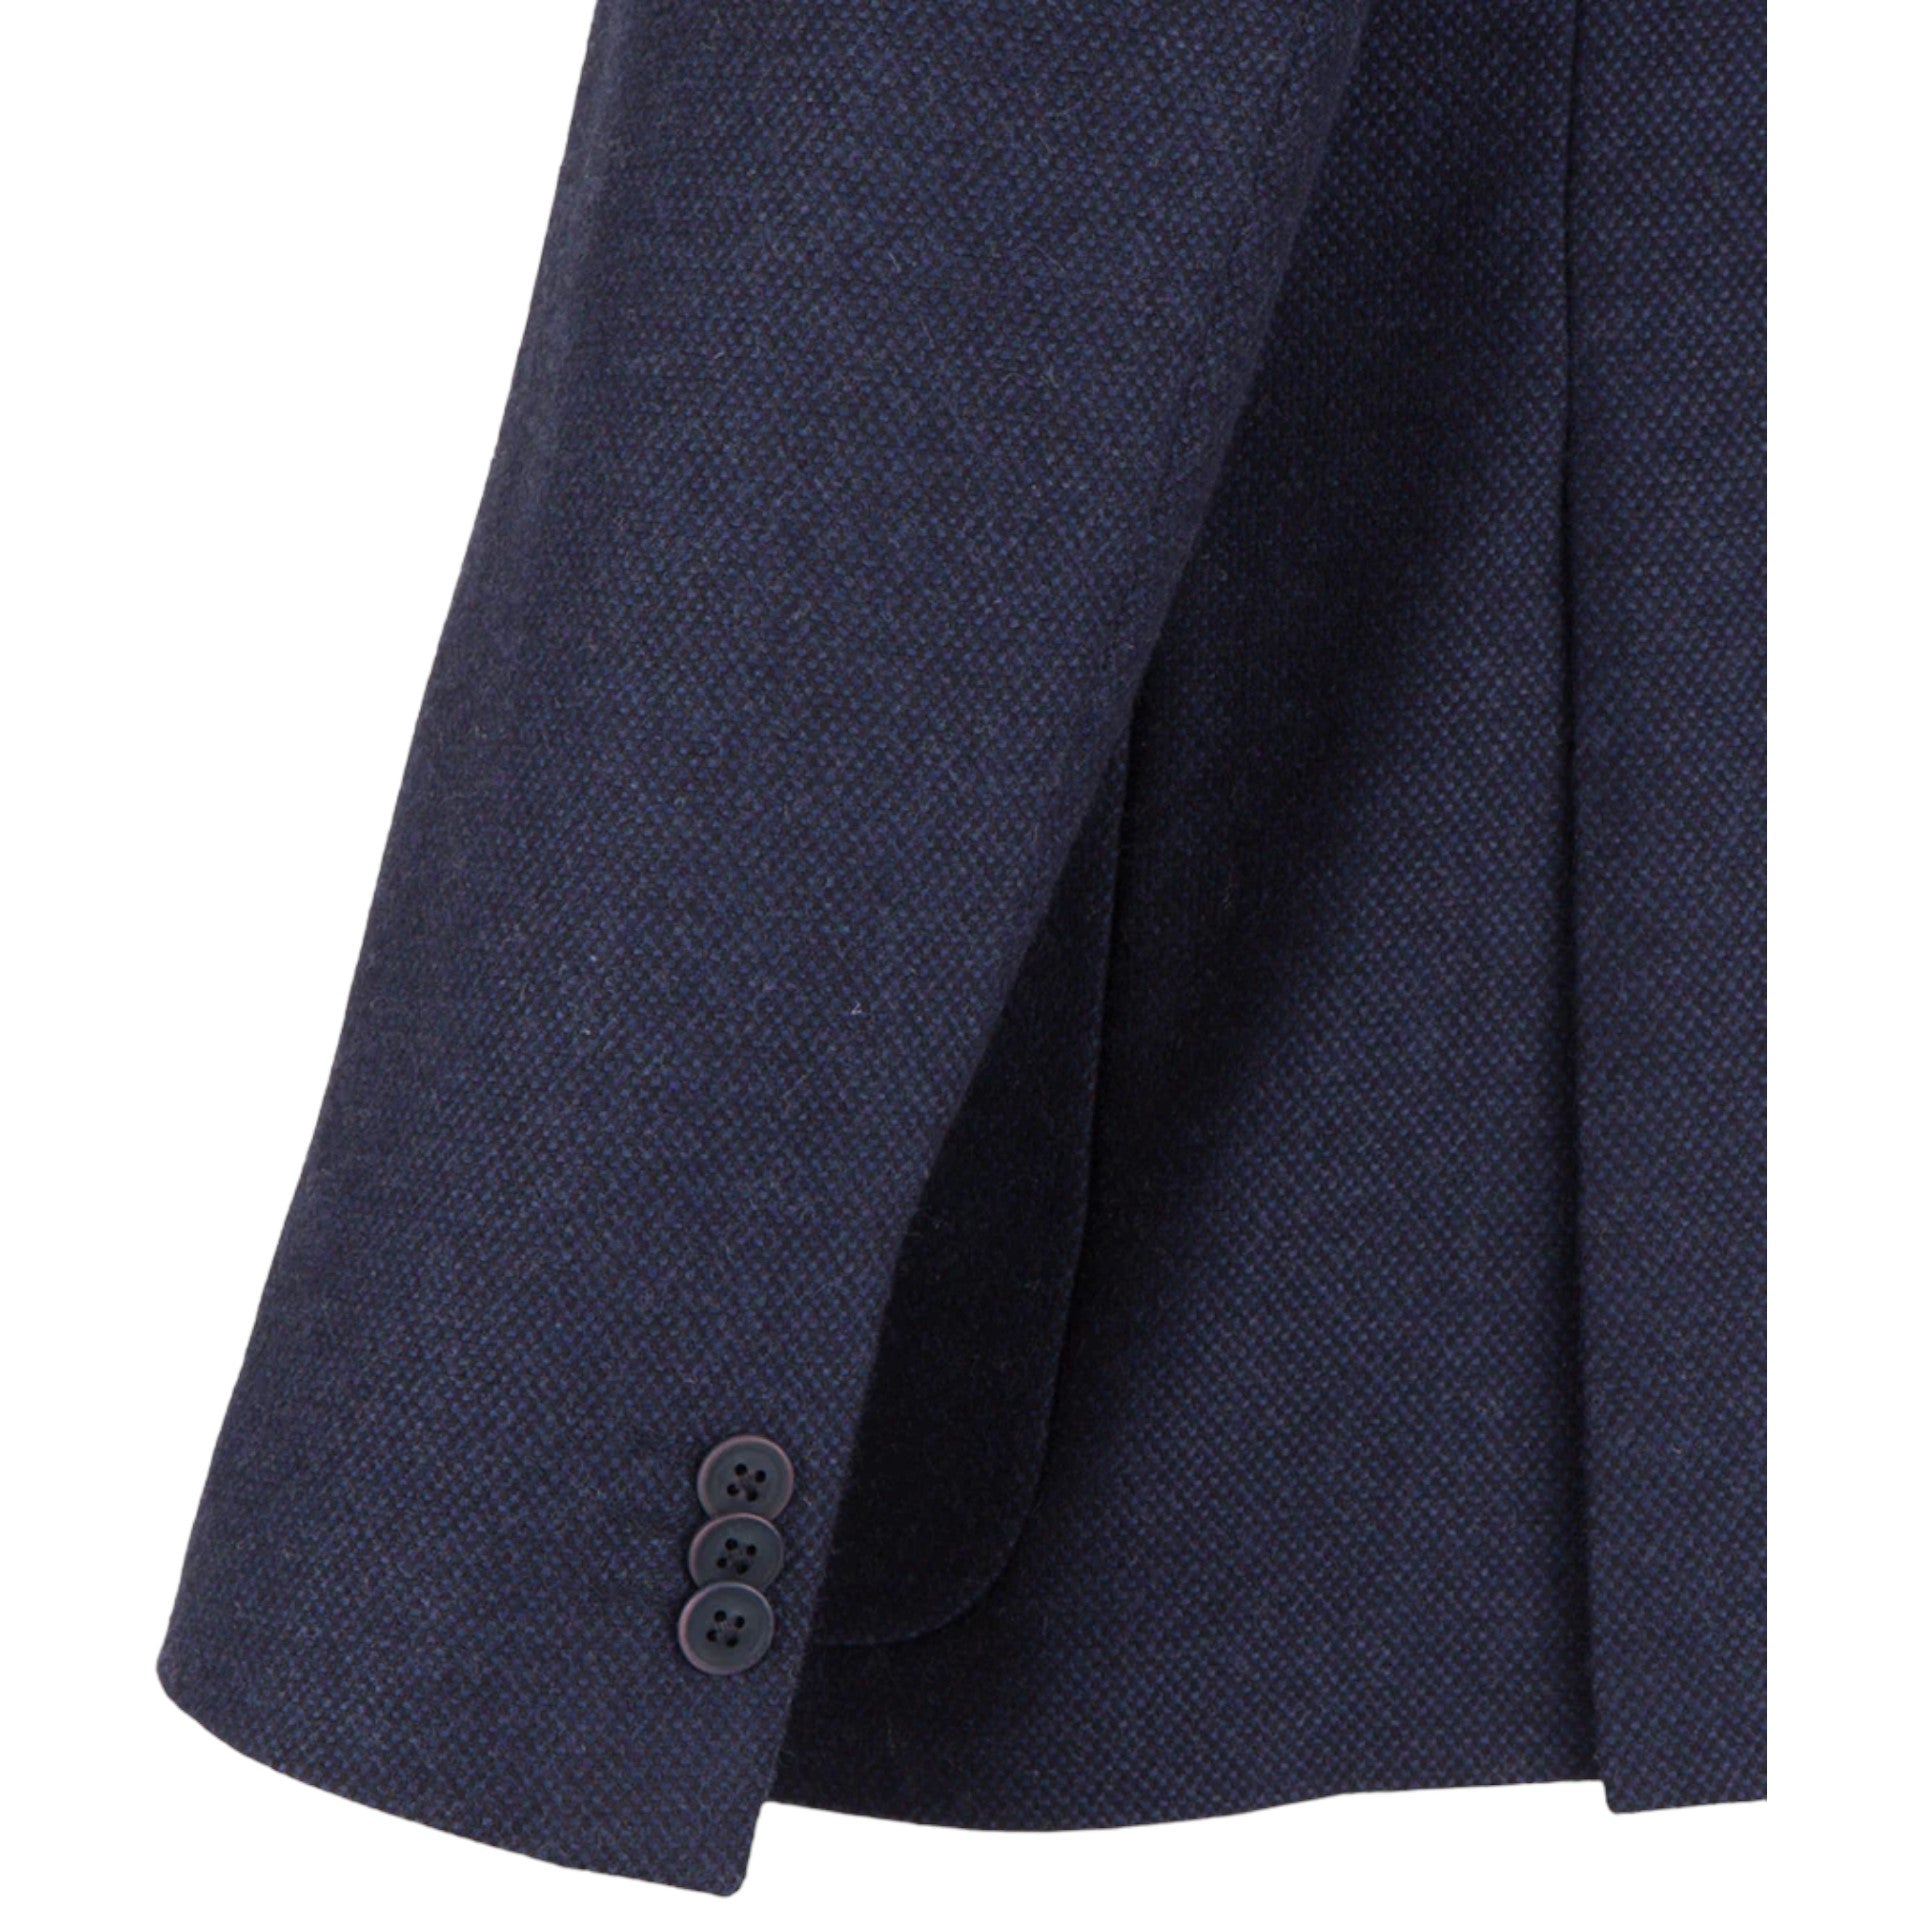 Guide London JK3501 Brushed Tweed Navy Blazer with Gillet Insert